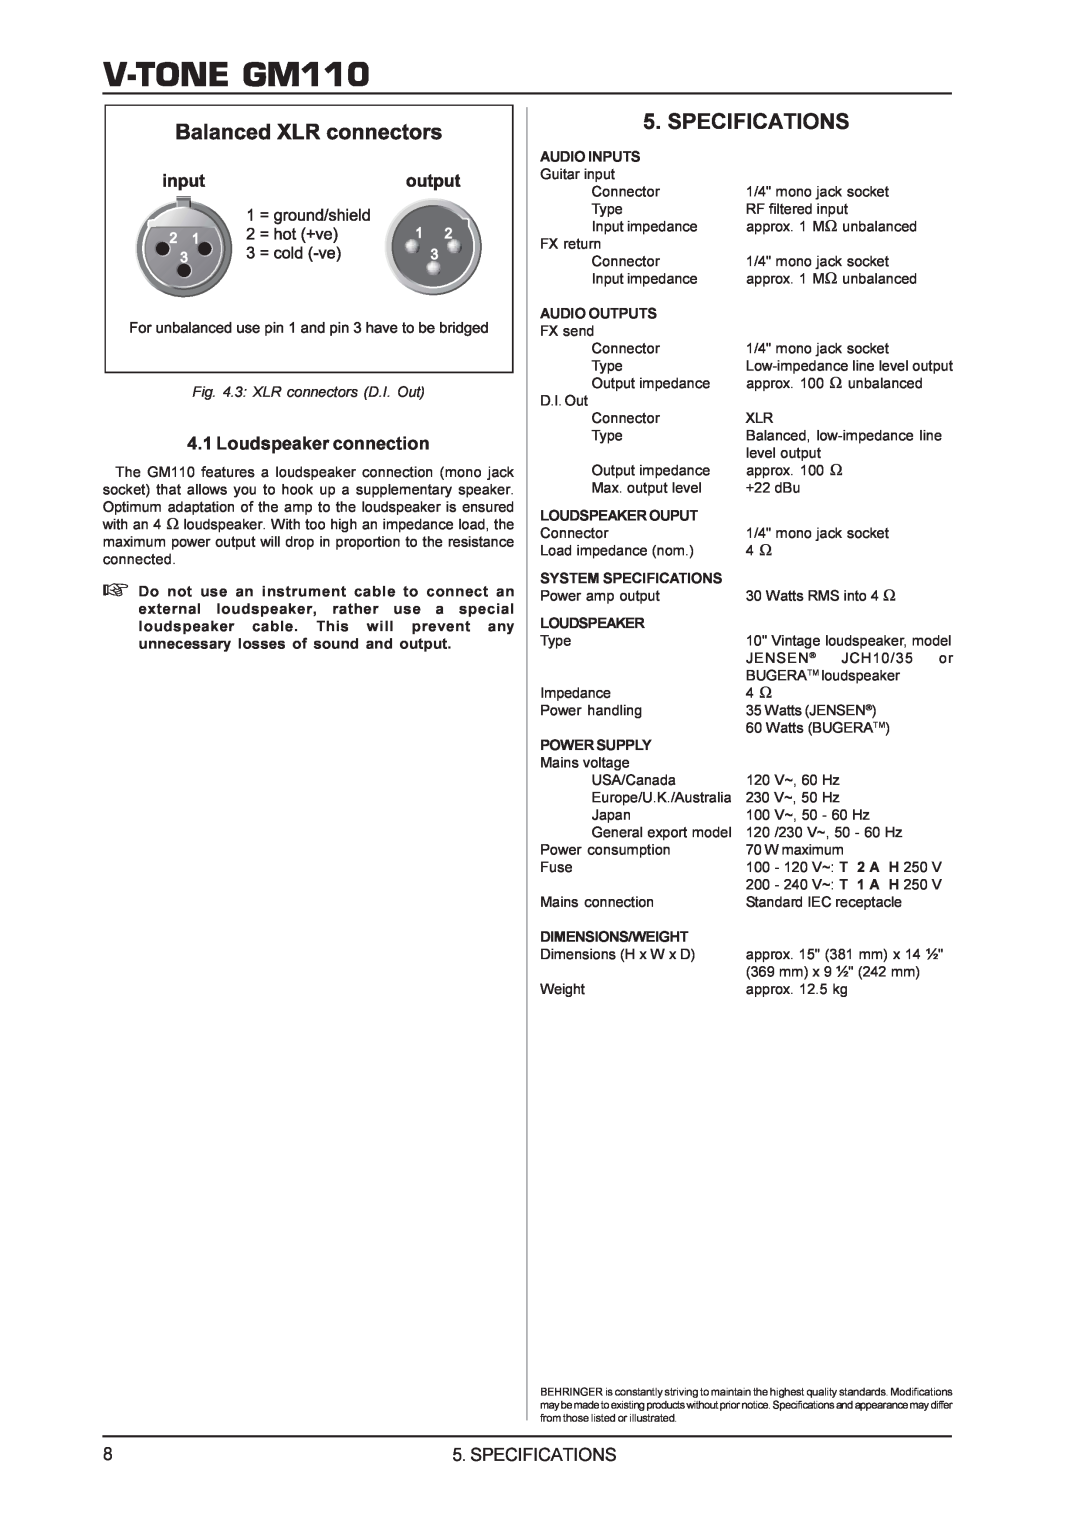 Behringer V-TONEGM110 manual Specifications, Loudspeaker connection 